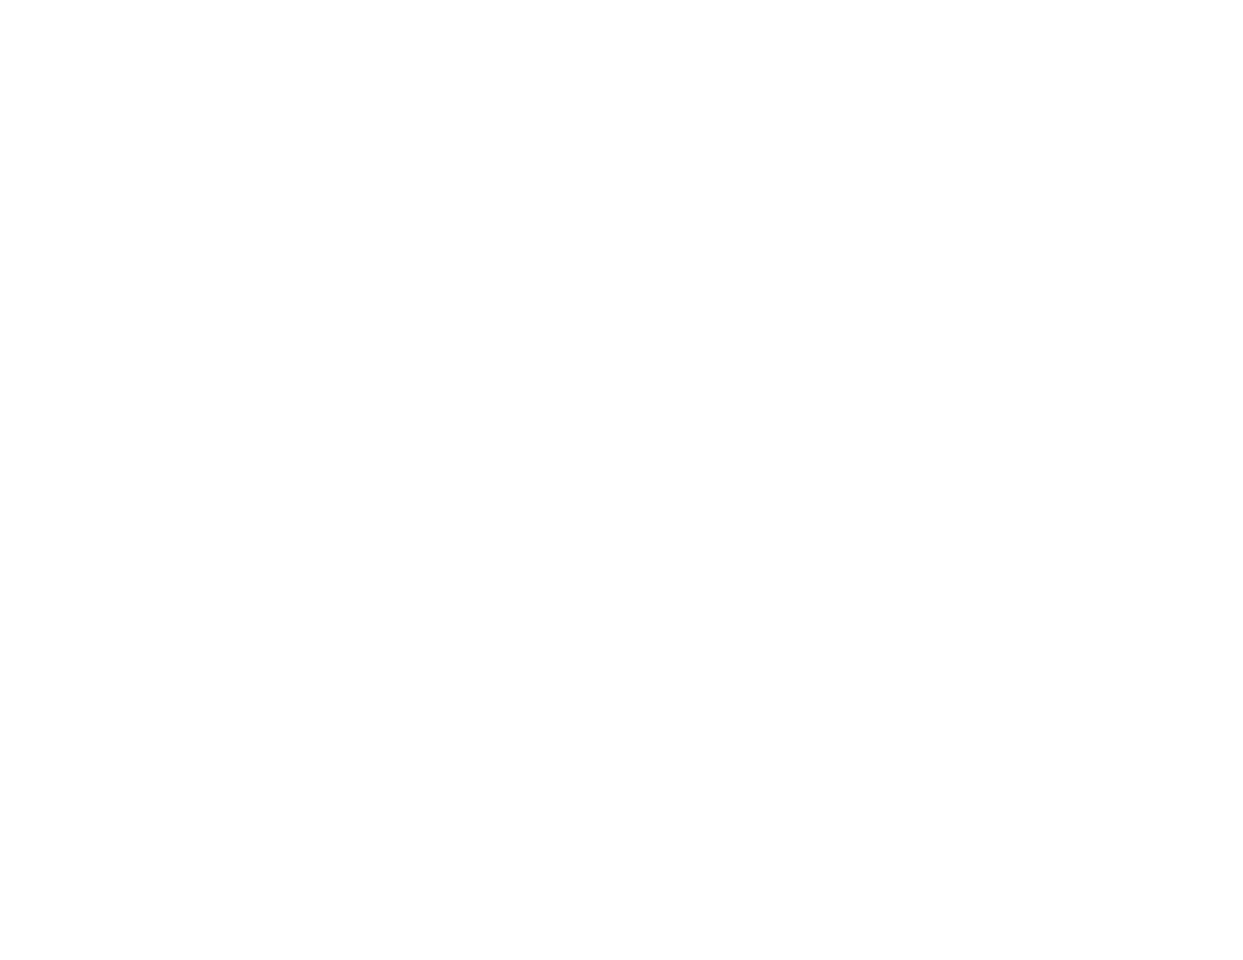 THE ANNABELLE